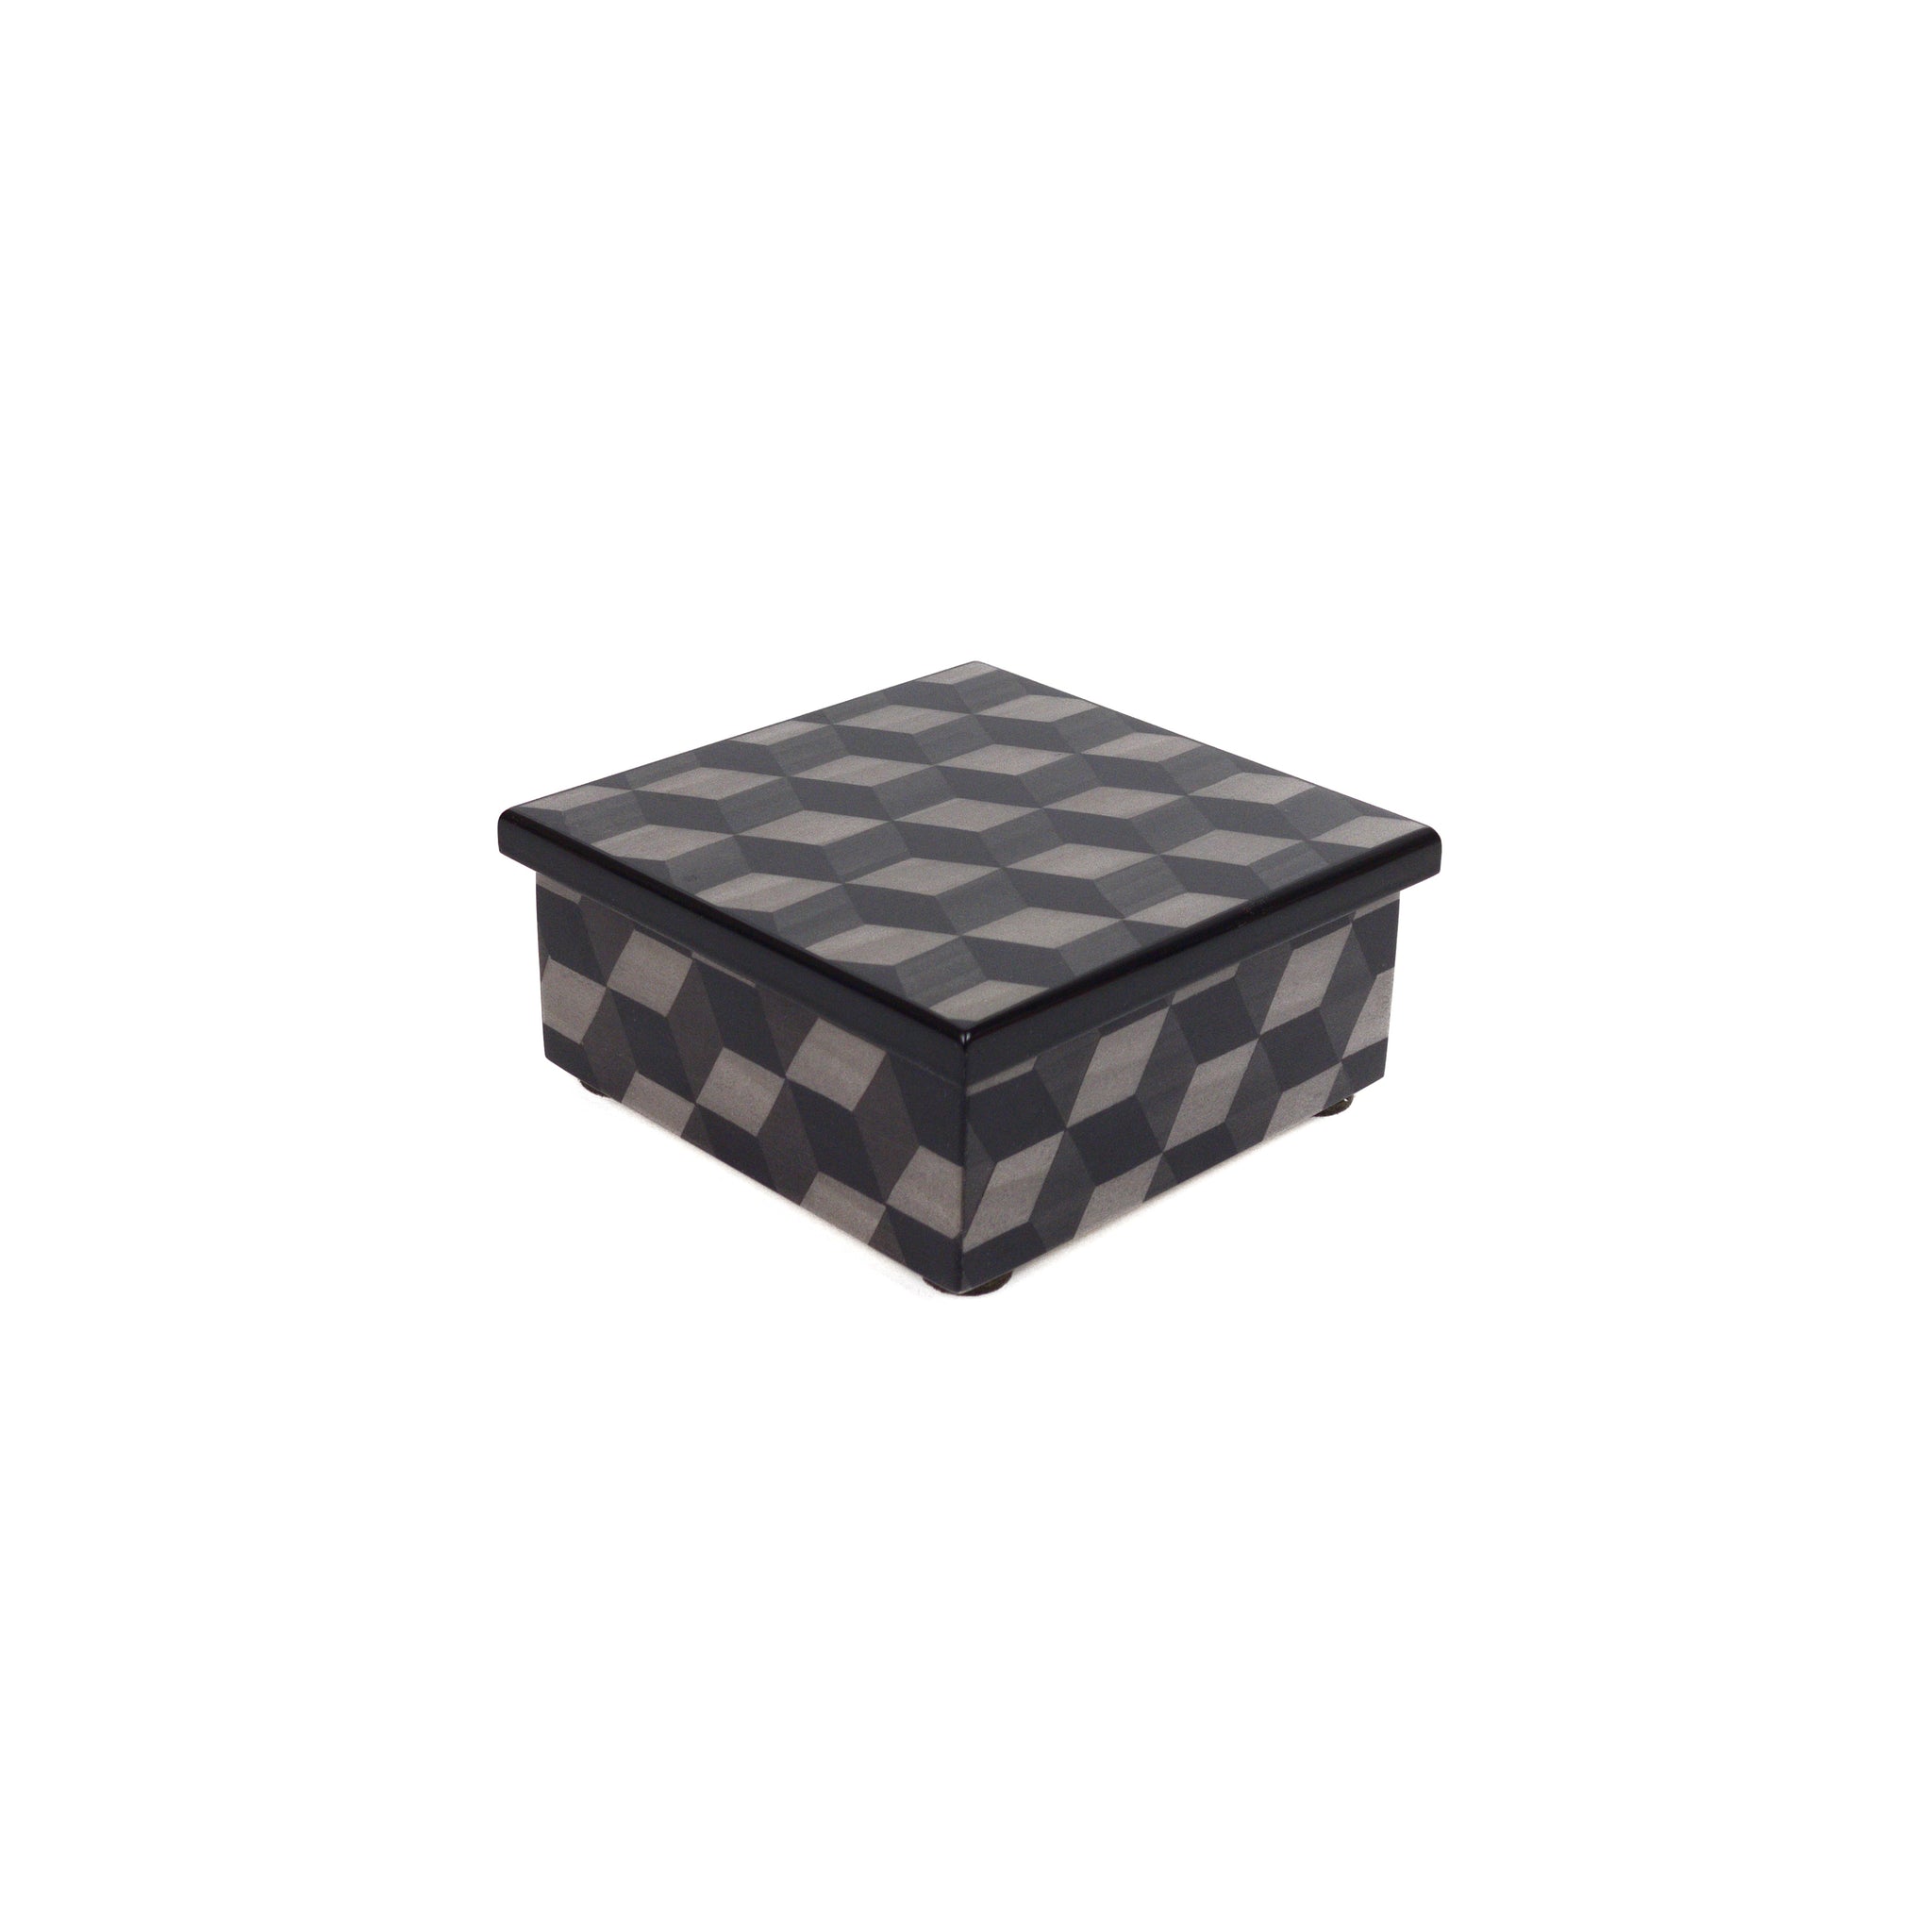 Rombo elegant box